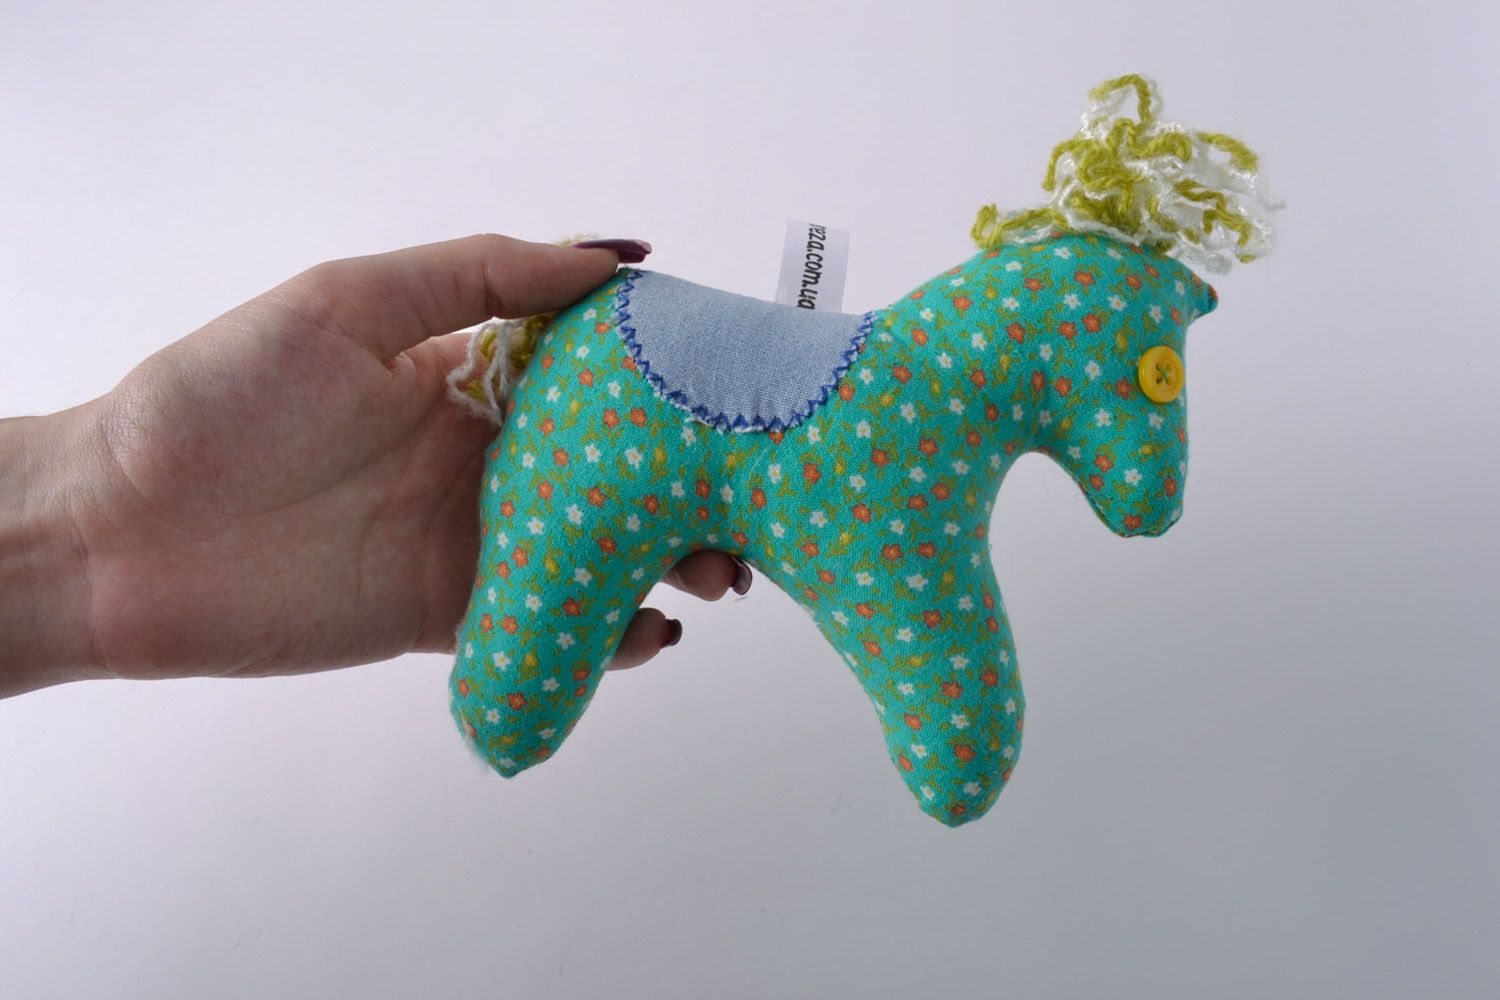 Textil Kuscheltier Pferd mit Polyester Füllung für Kinder sicher einfach klein foto 5